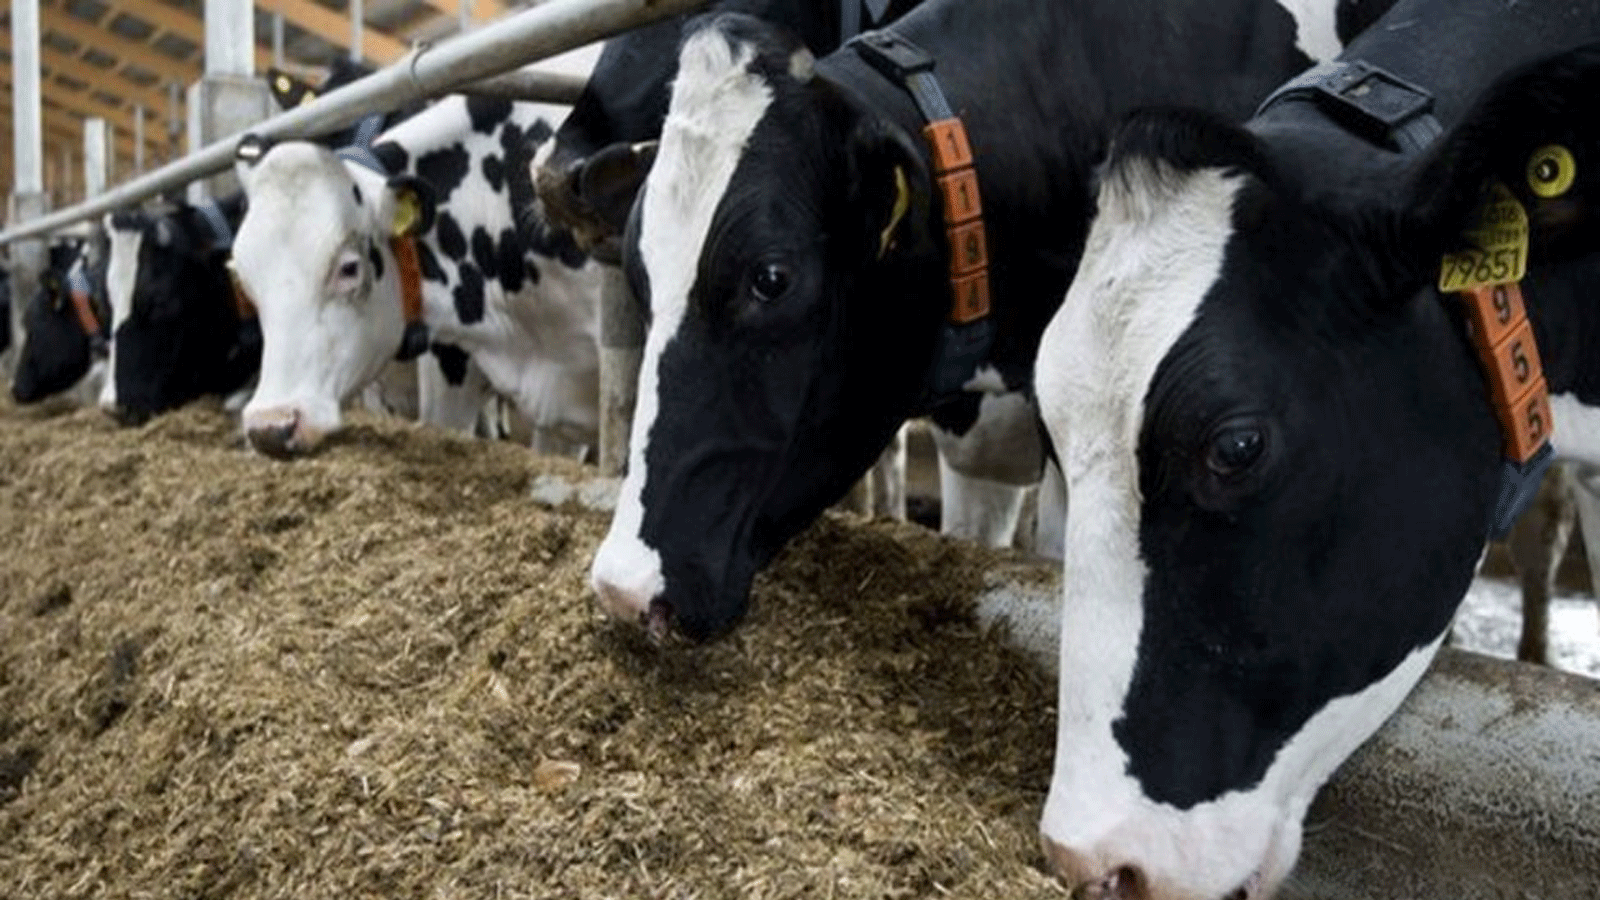 أبقار في مزرعة ألمانية تتغذى على فول الصويا في العلف المستورد من أوروبا معدّل وراثيًا